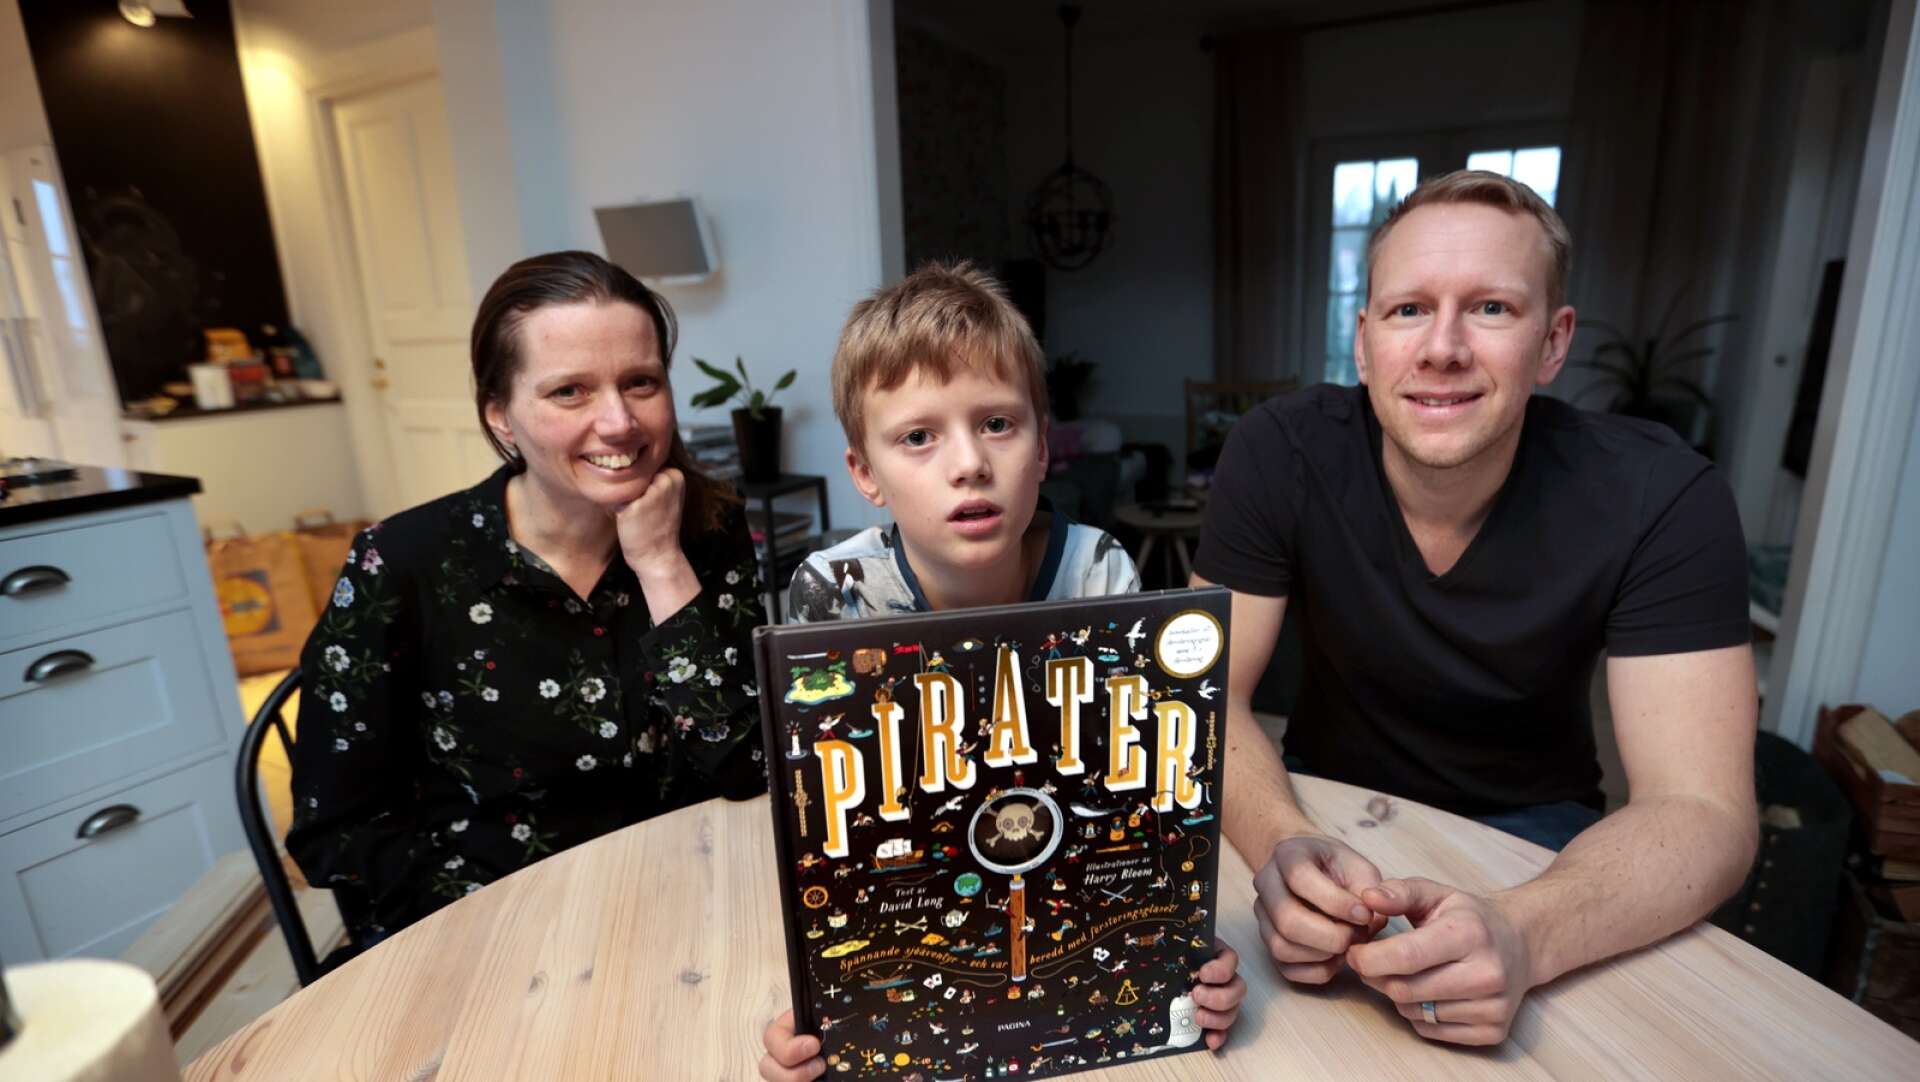 Fredrik och Kristina Lindroos bad om begagnade presenter när sonen Wilmer fyllde åtta år. Bland annat fick han den här piratboken. ”Det är smart, i stället för att behöva köpa en massa nya saker”, säger han.